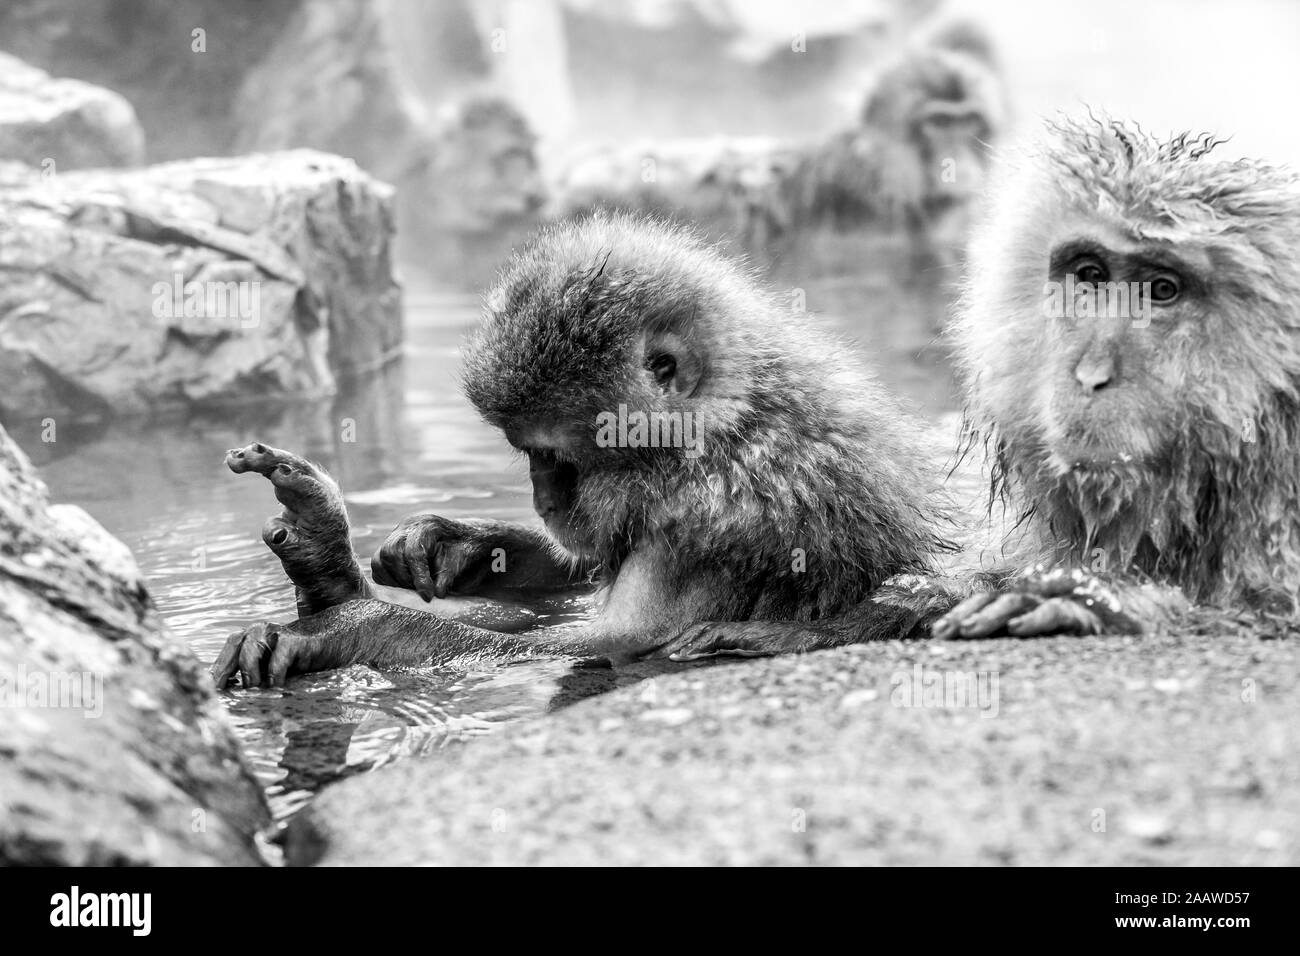 Japanischen makaken in einer heißen Quelle Jigokudani Monkey Park in Japan sitzen, Präfektur Nagano. Schwarz/Weiß-Bild Stockfoto